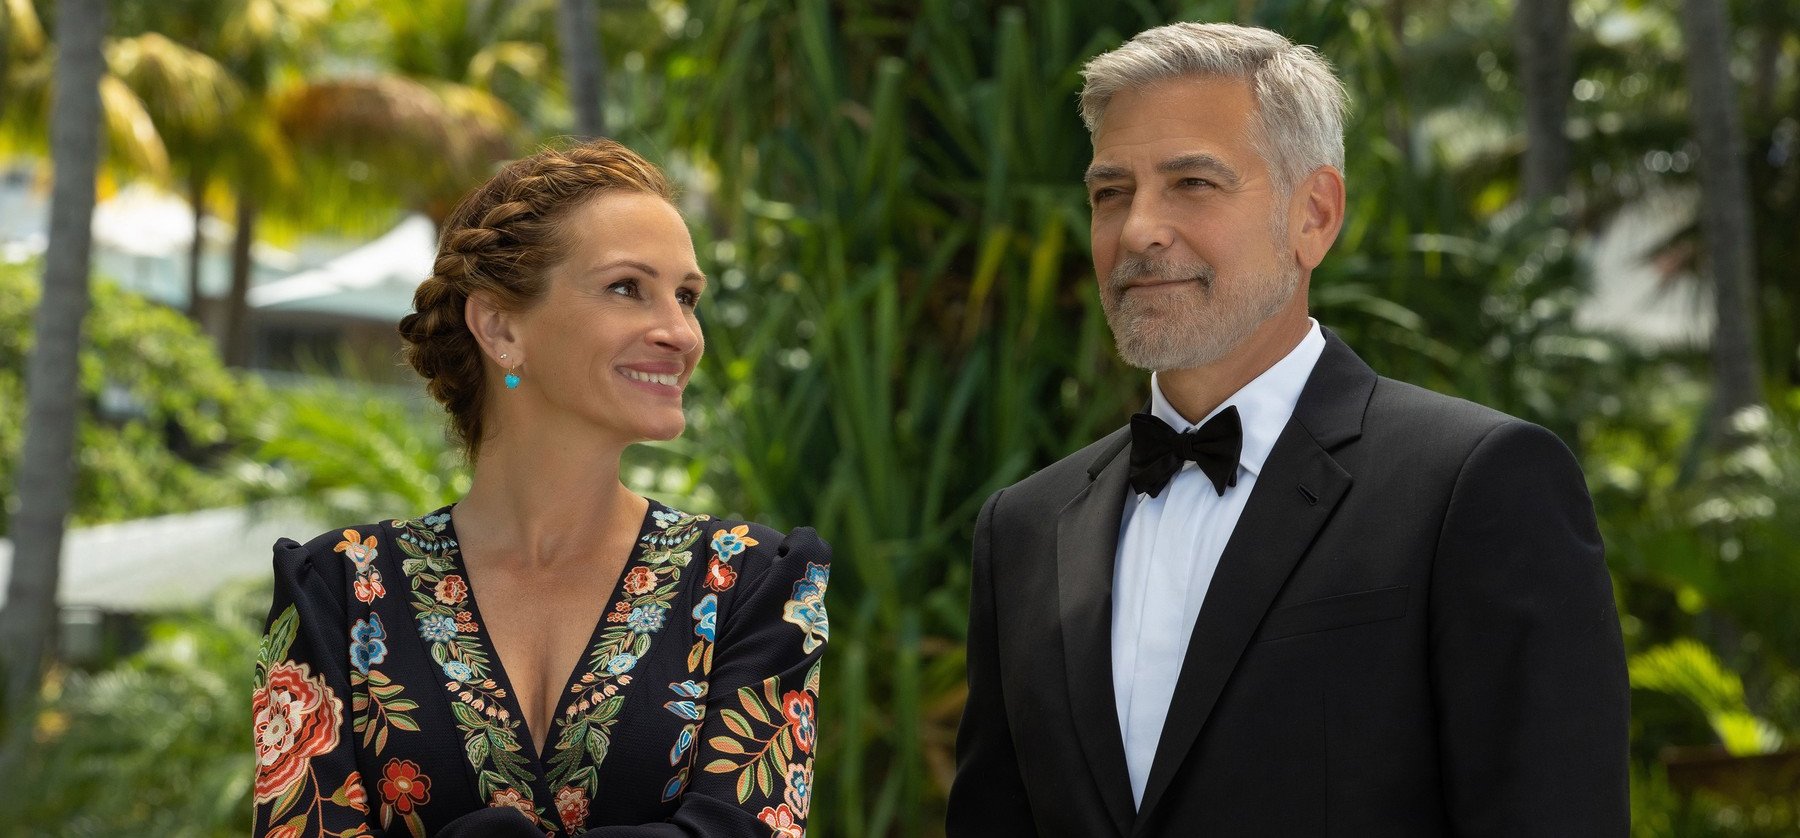 Friss lesifotók alapján nehéz elhinni, hogy George Clooney és Julia Roberts nem habarodtak egymásba